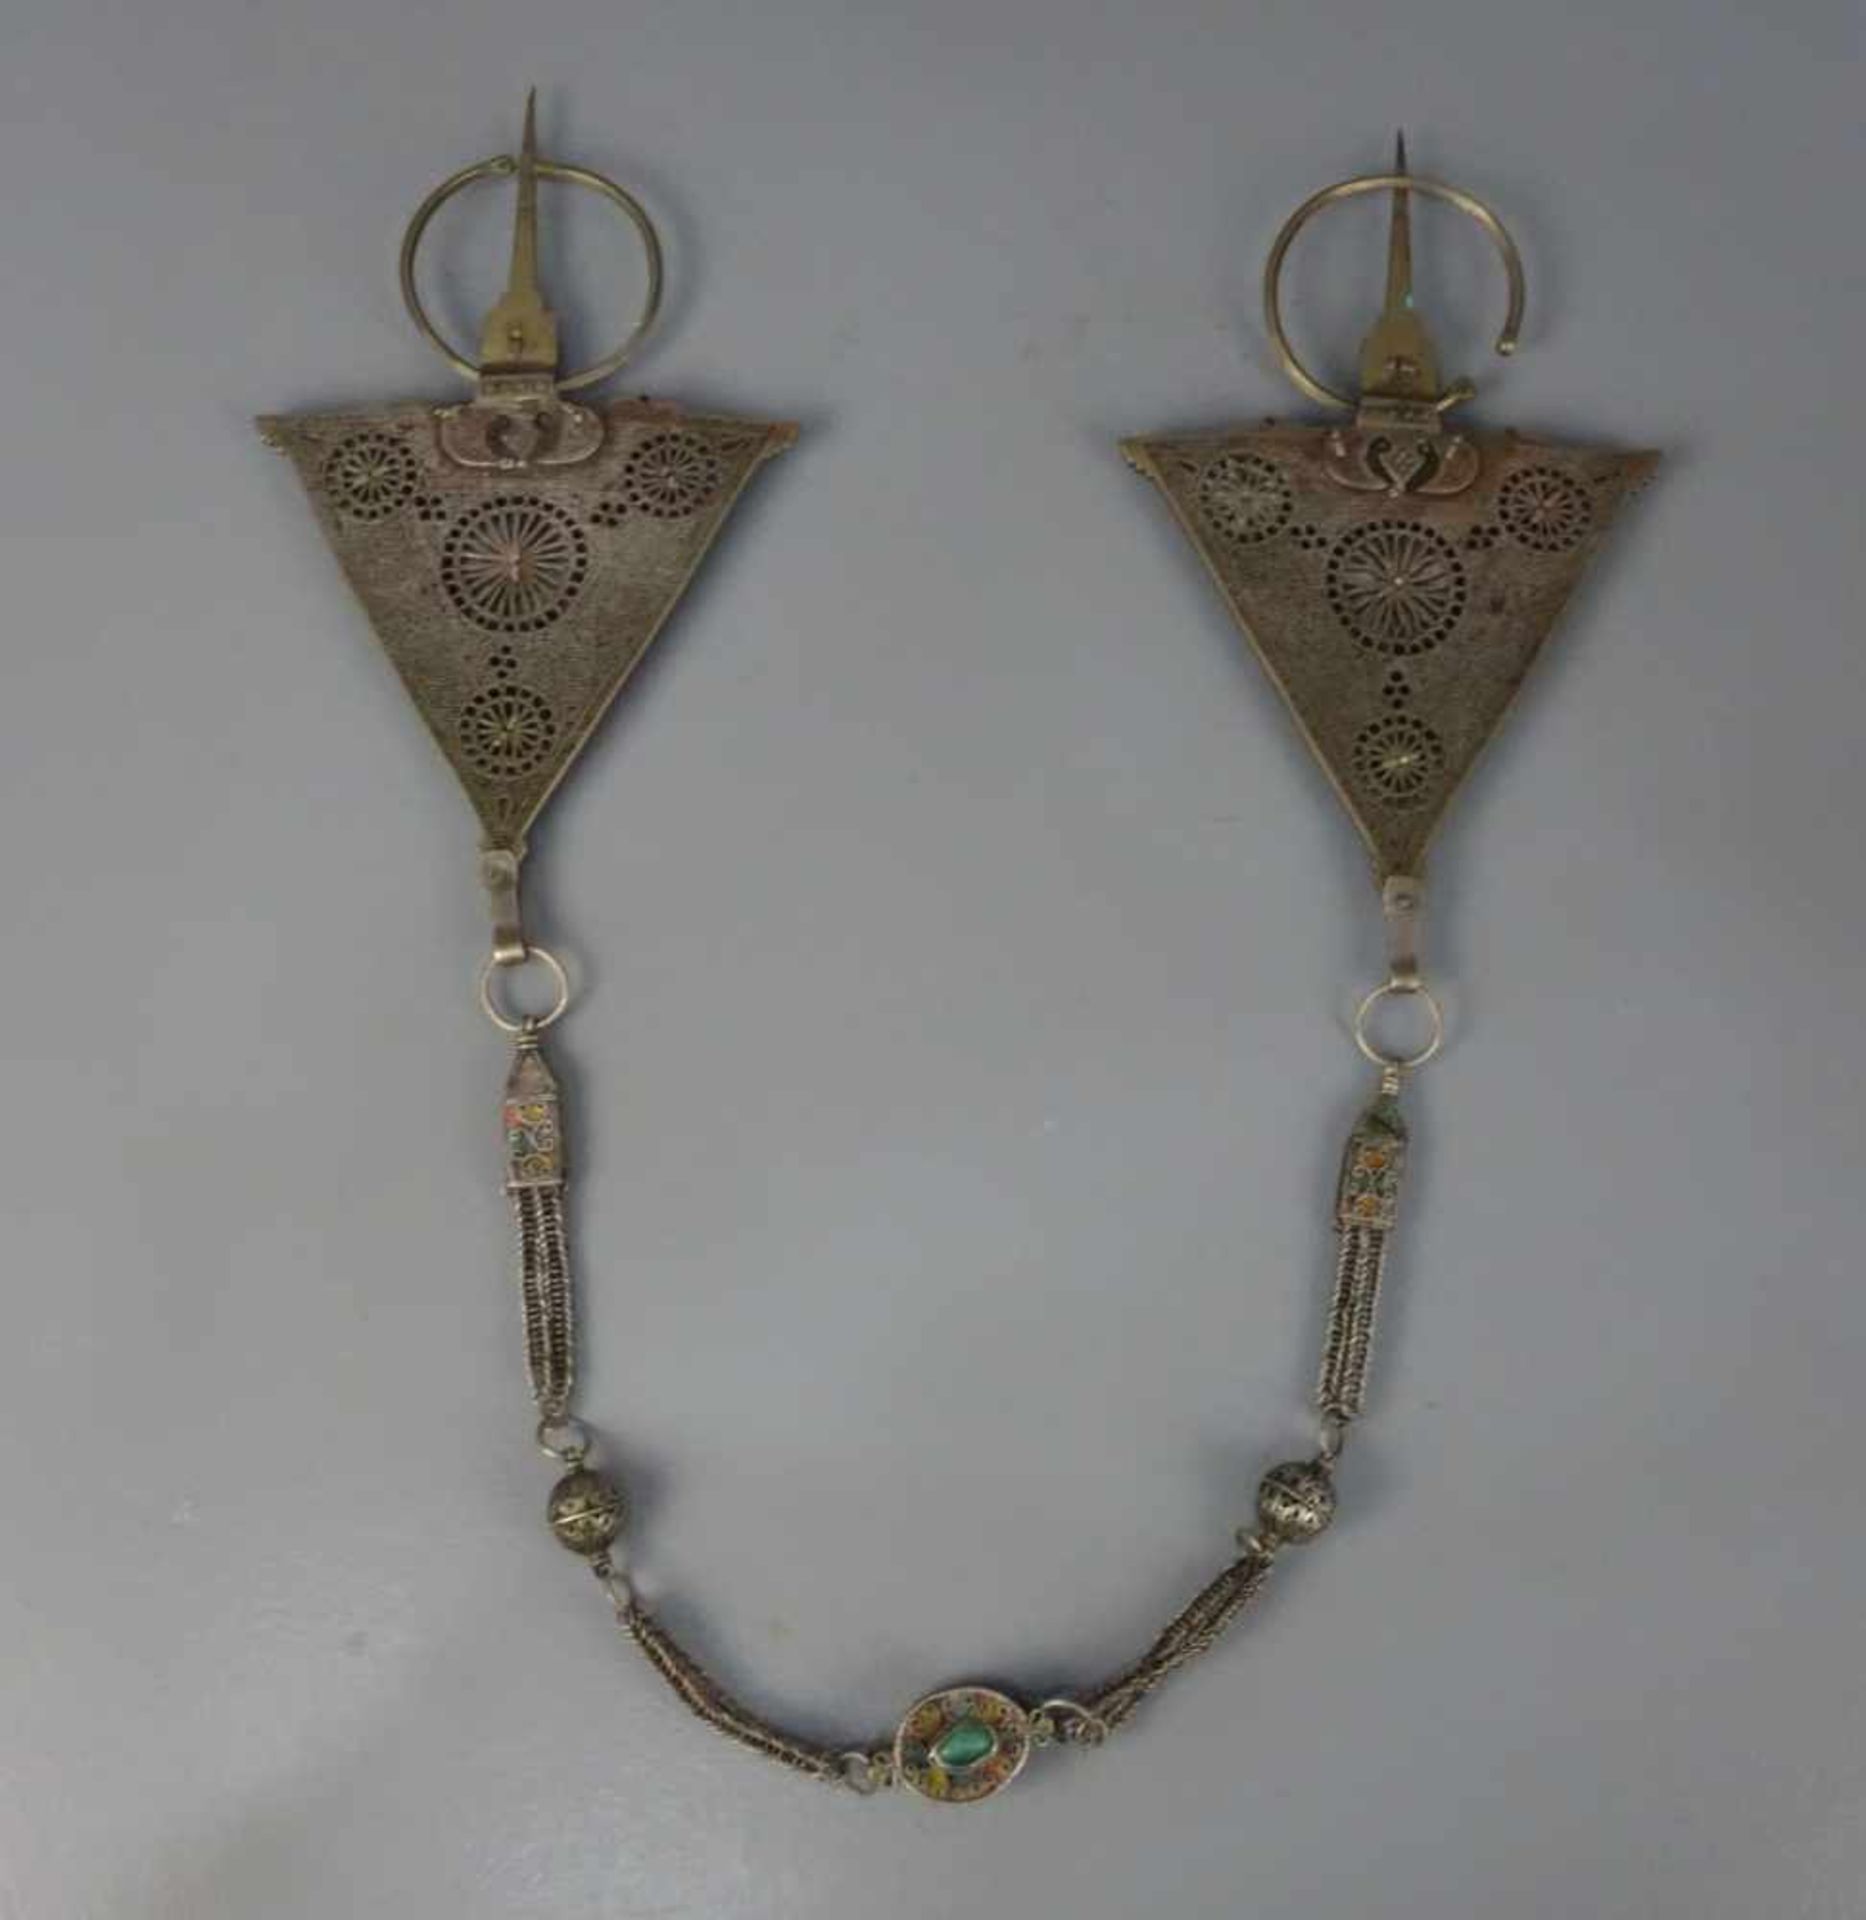 BERBER-SCHMUCK: KETTE / oriental necklace, Tata / Marokko, wohl Silber, Glas und wohl Amazonit ( - Bild 2 aus 2